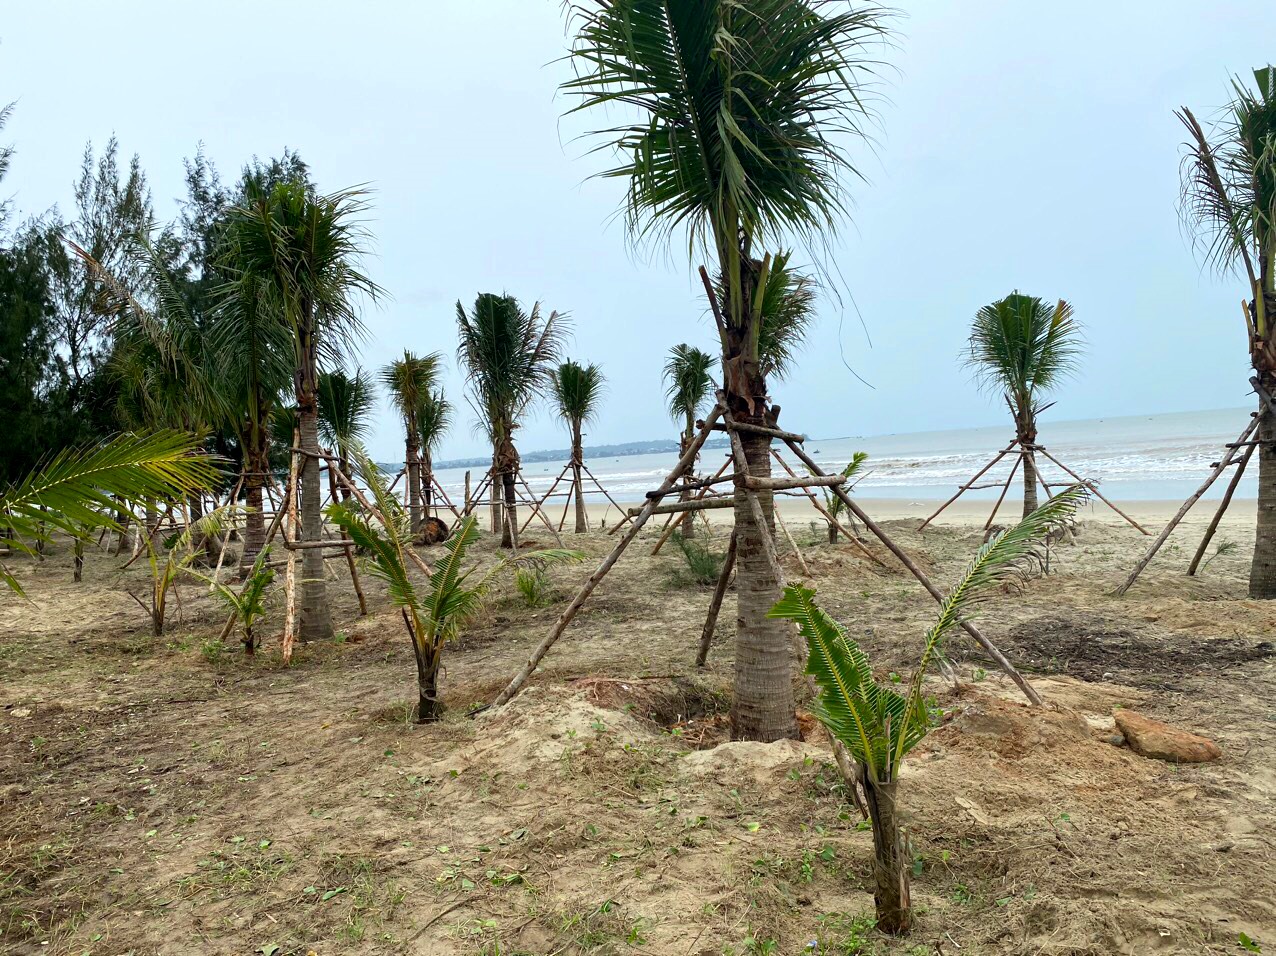 Mới đây, Tp. Quảng Ngãi huy động các tổ chức, cá nhân đóng góp, ủng hơn 900 cây dừa, kinh phí 4,5 tỉ đồng để trồng dọc bãi biển Mỹ Khê nhằm tạo cảnh quan…Ảnh: Ngọc Viên